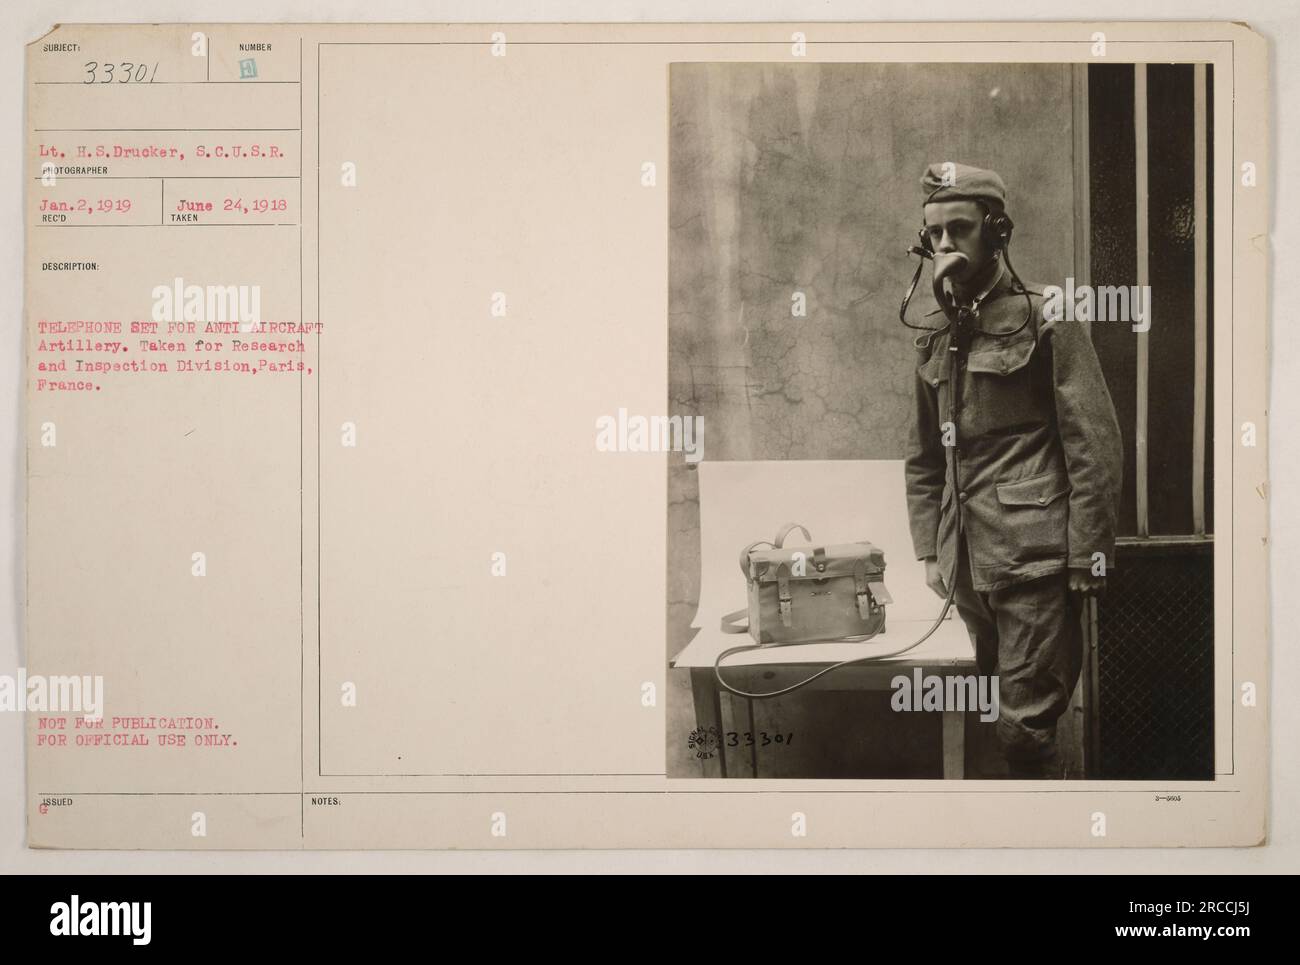 Poste téléphonique pour artillerie anti-aérienne, pris par le lieutenant H.S. Drucker, S.C.U.R., le 24 juin 1918 à Paris, France. Cette photographie a été prise pour la Division de la recherche et de l'inspection et ne doit pas être publiée. Il est destiné à un usage officiel uniquement. Banque D'Images